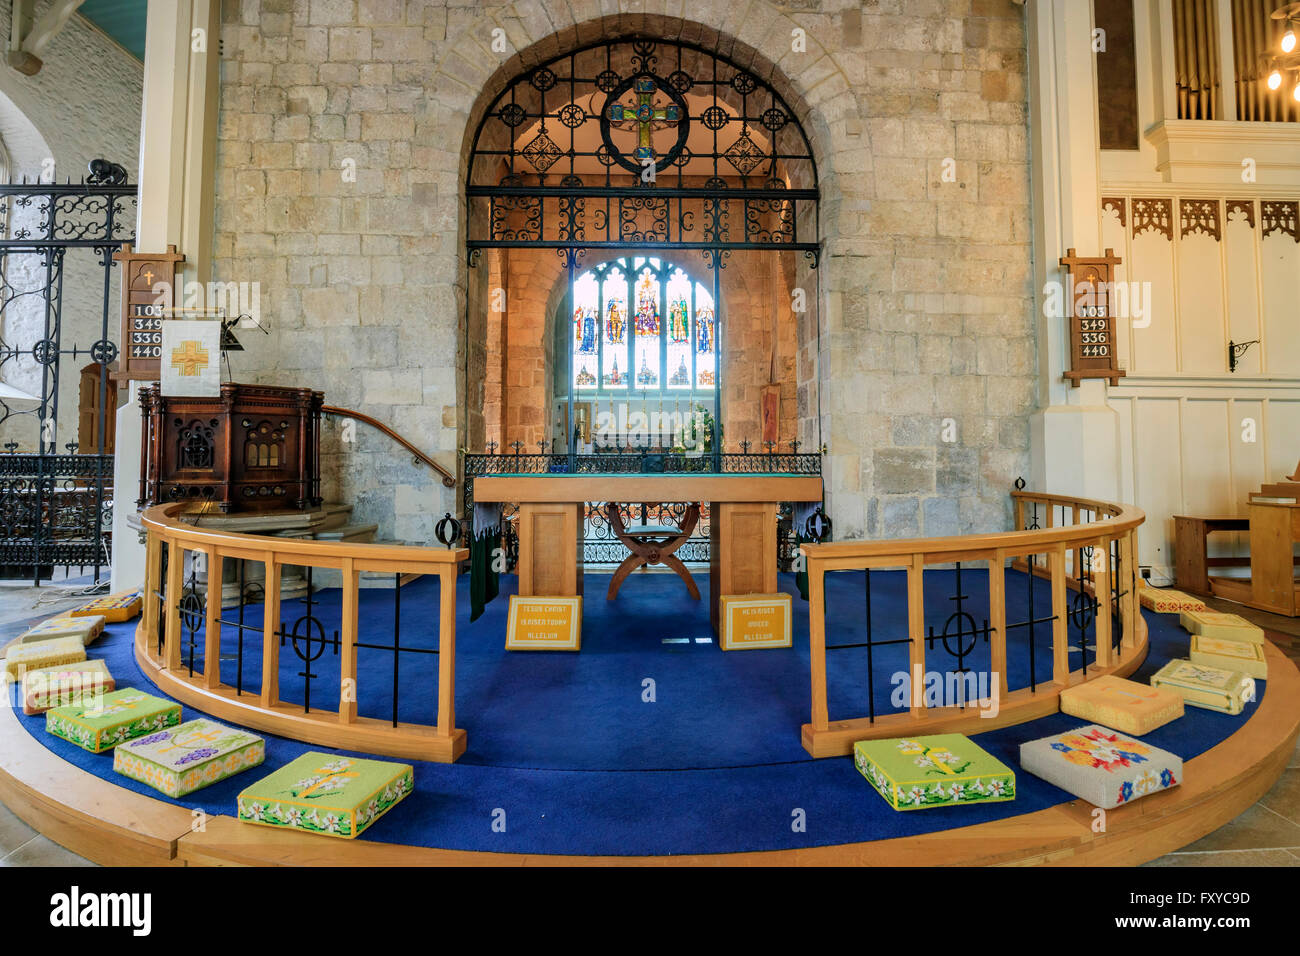 Southampton, APR 11: The historical Saint Michael's Church on APR 11, 2016 at Southampton, UK Stock Photo